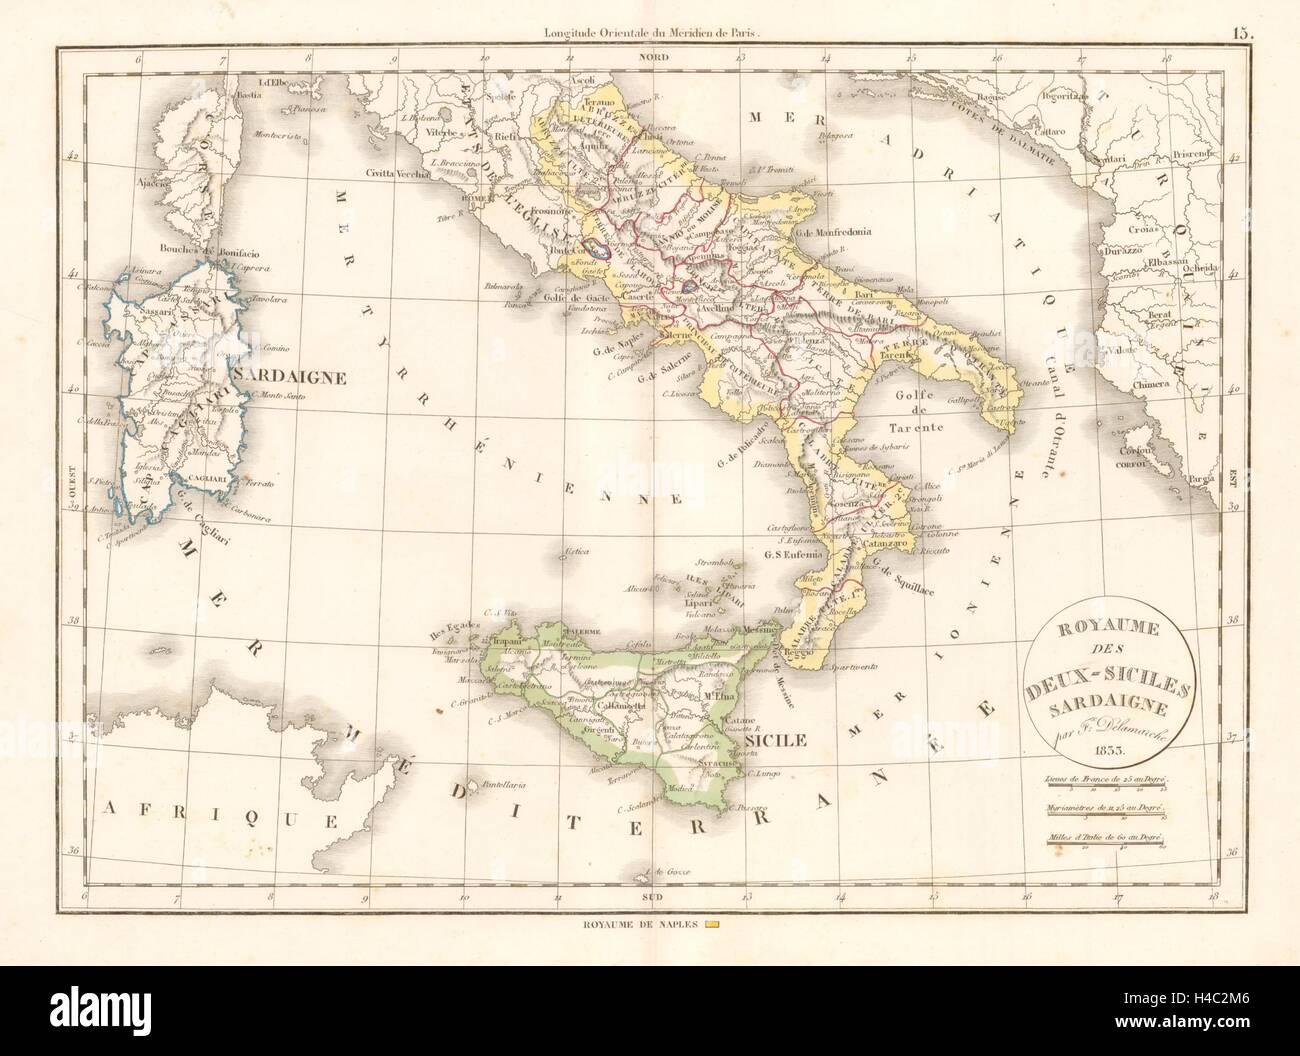 "Royaume des Deux-Siciles, Sardaigne". DELAMARCHE. Königreich zwei Sizilien 1833 Karte Stockfoto